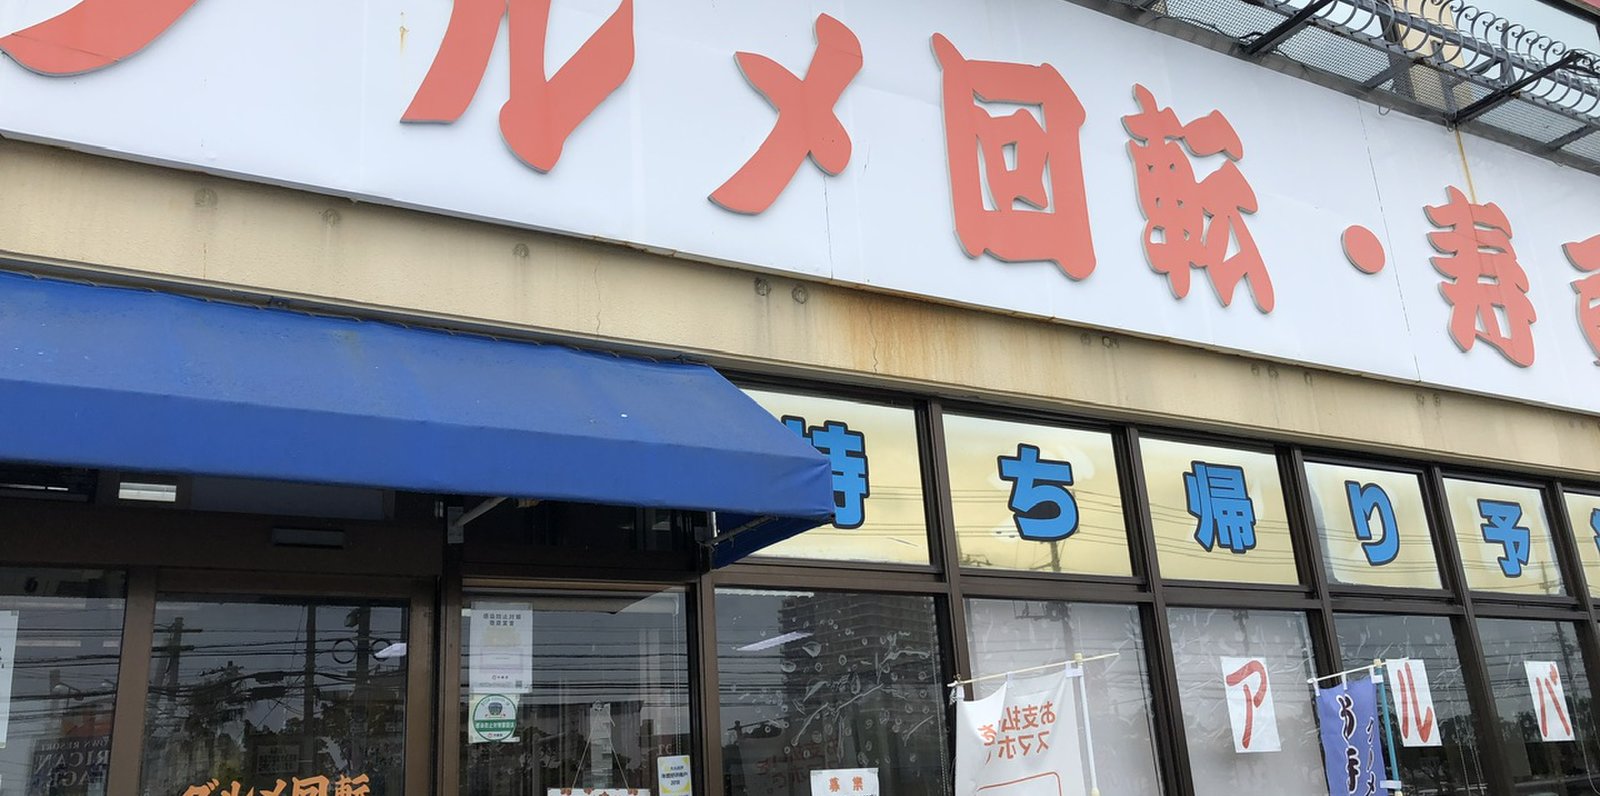 グルメ回転寿司市場 美浜店